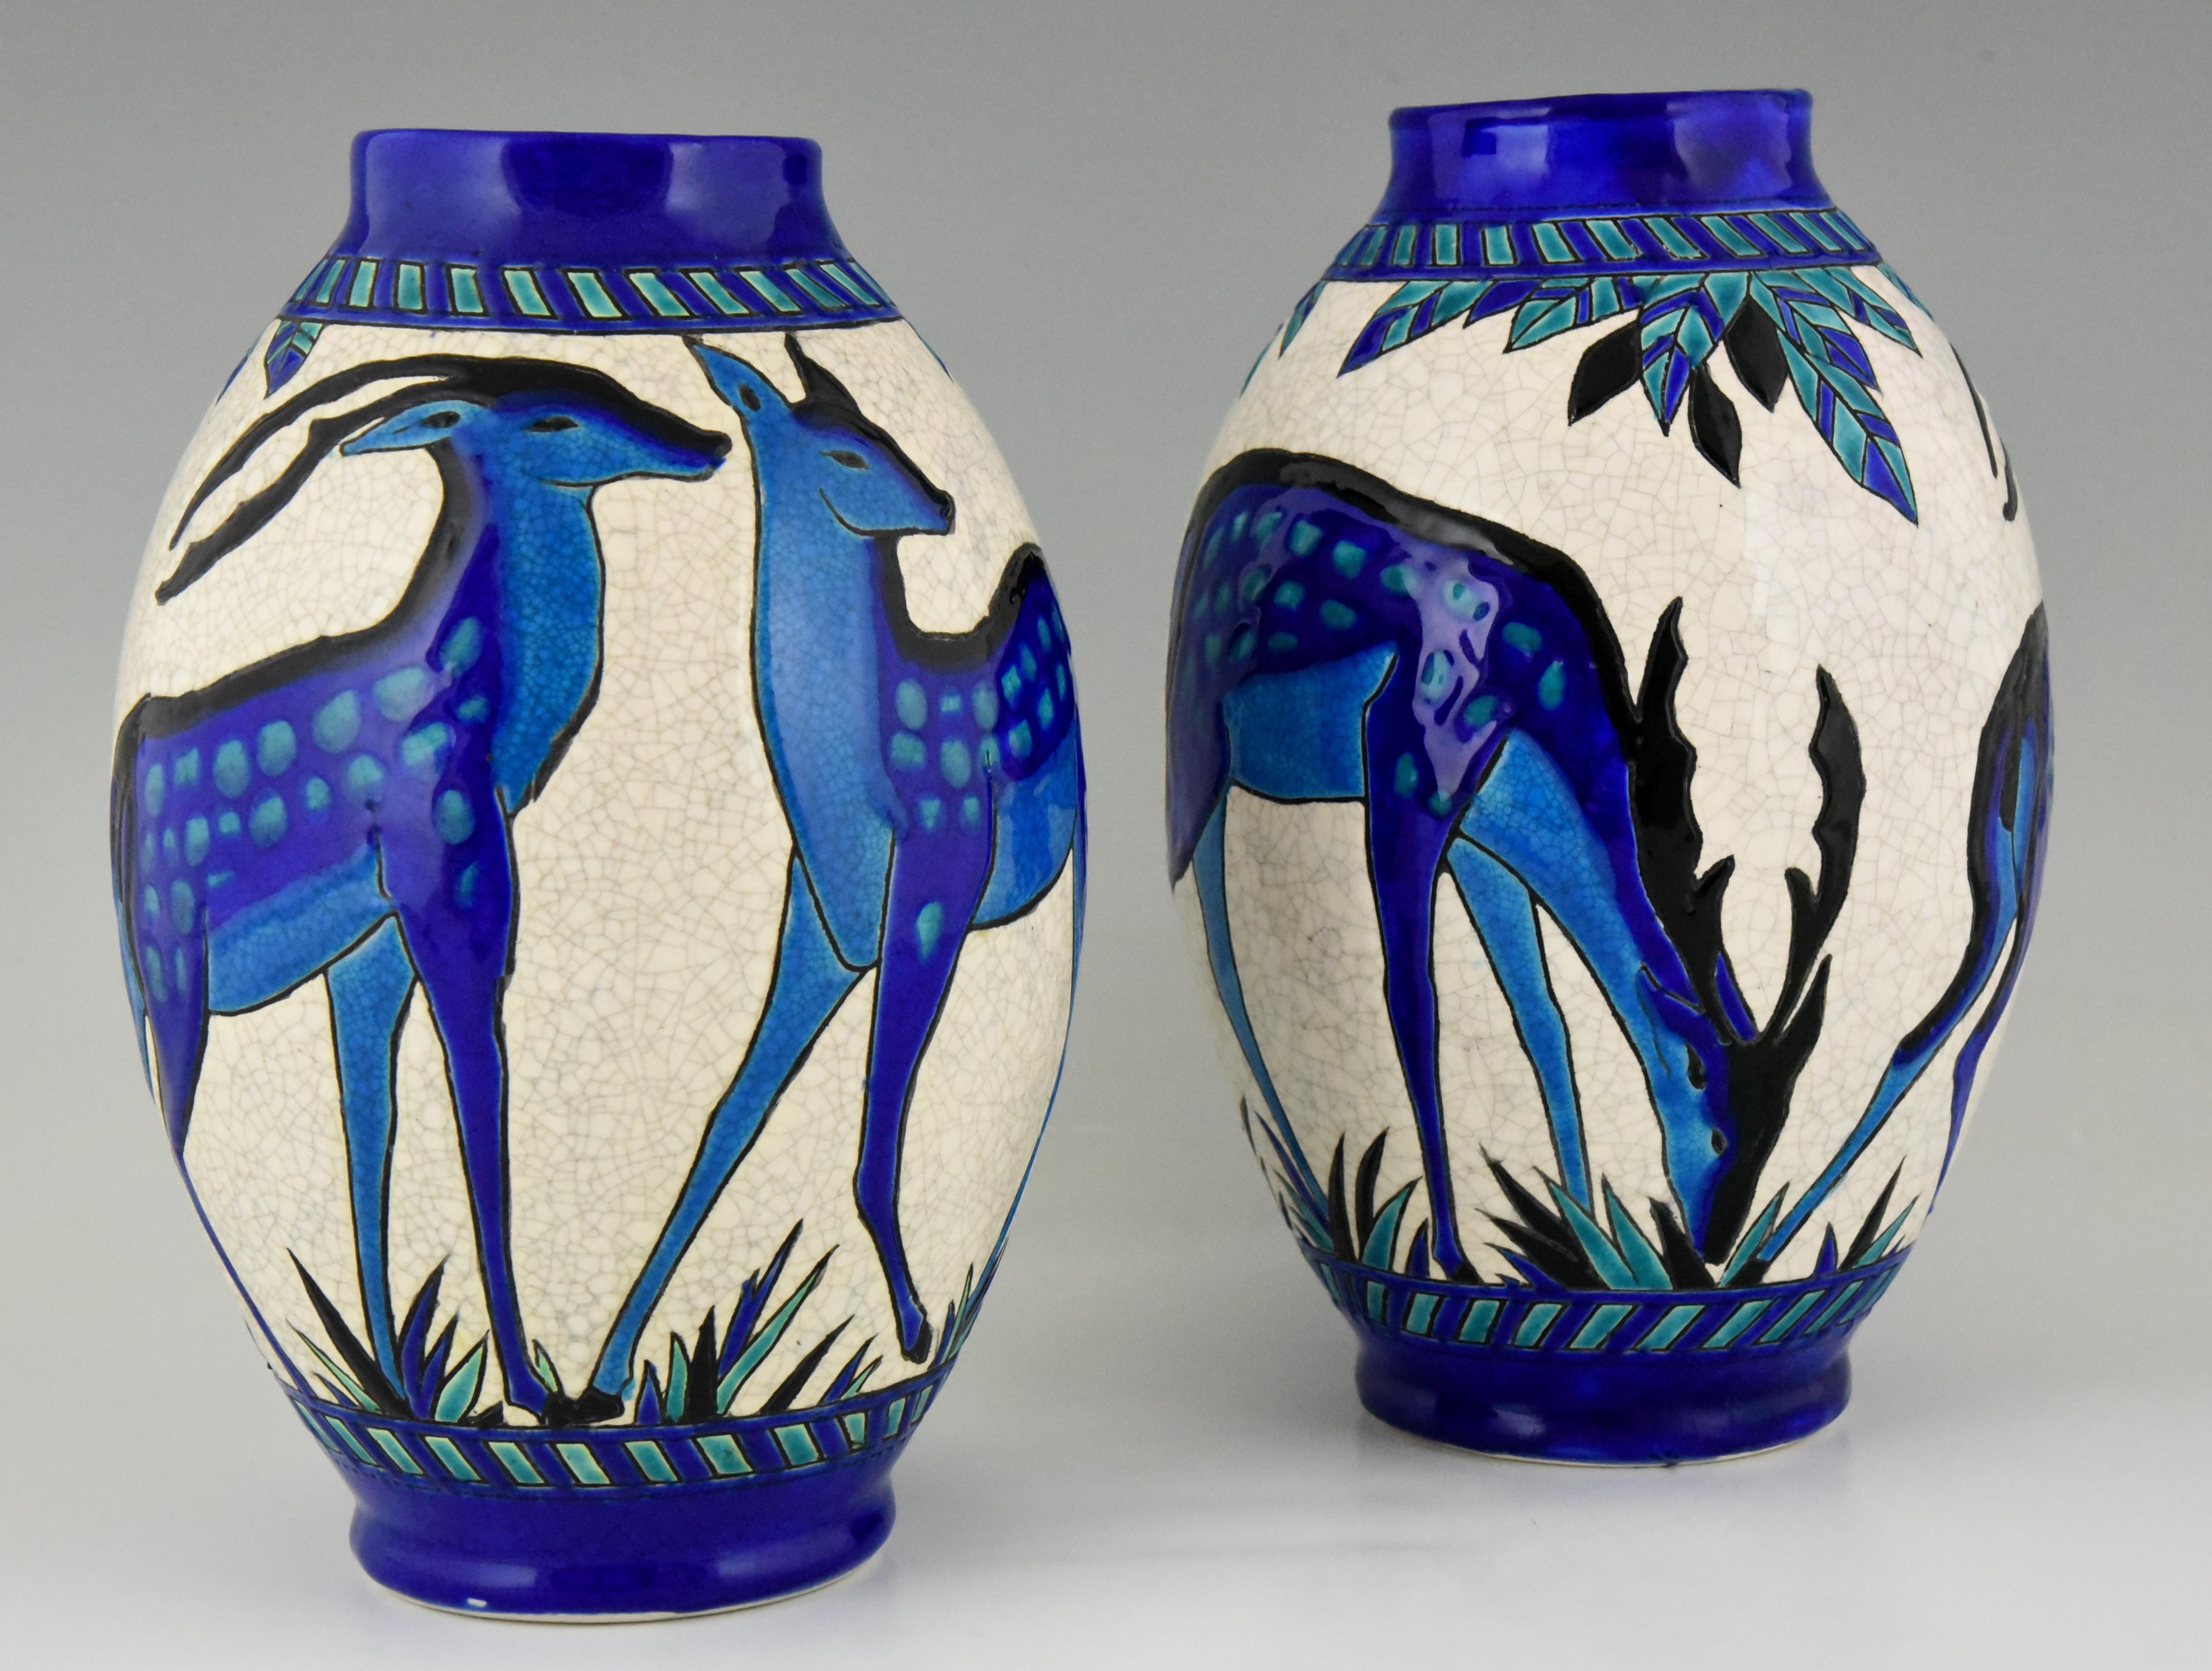 20th Century Art Deco Craquelé Ceramic Vases with Blue Deer Charles Catteau for Keramis, Pair